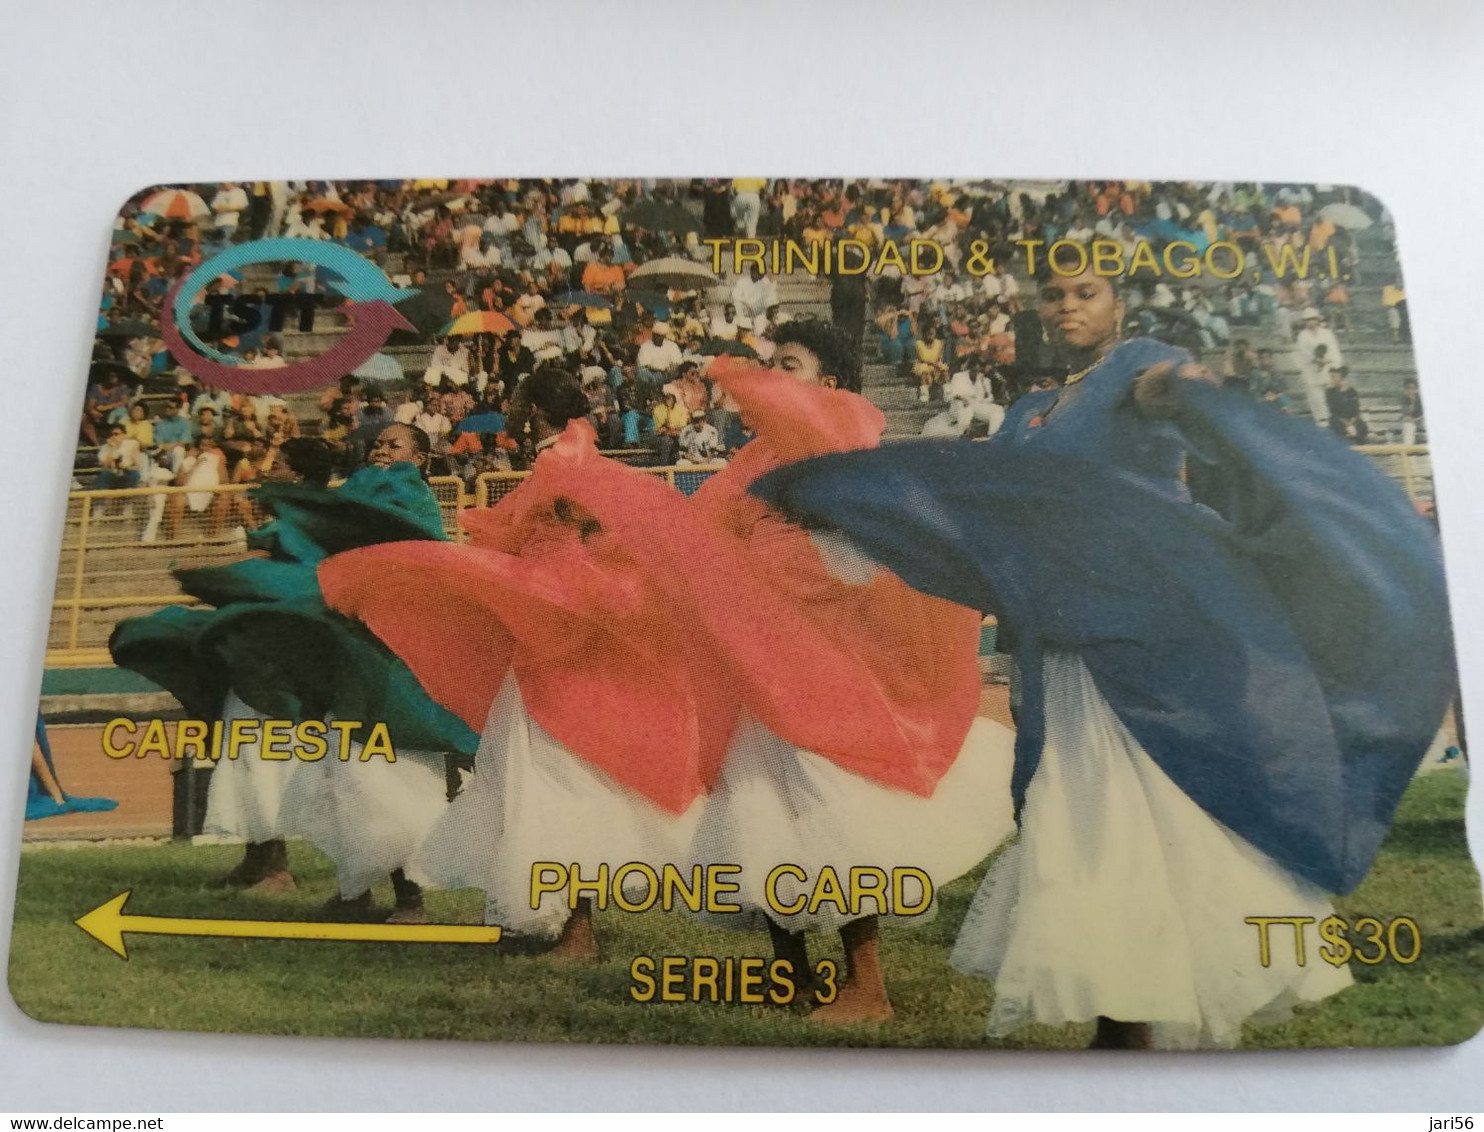 TRINIDAD & TOBAGO  GPT CARD    $30,-  9CCTA  CARIFESTA           Fine Used Card        ** 9589** - Trinidad & Tobago